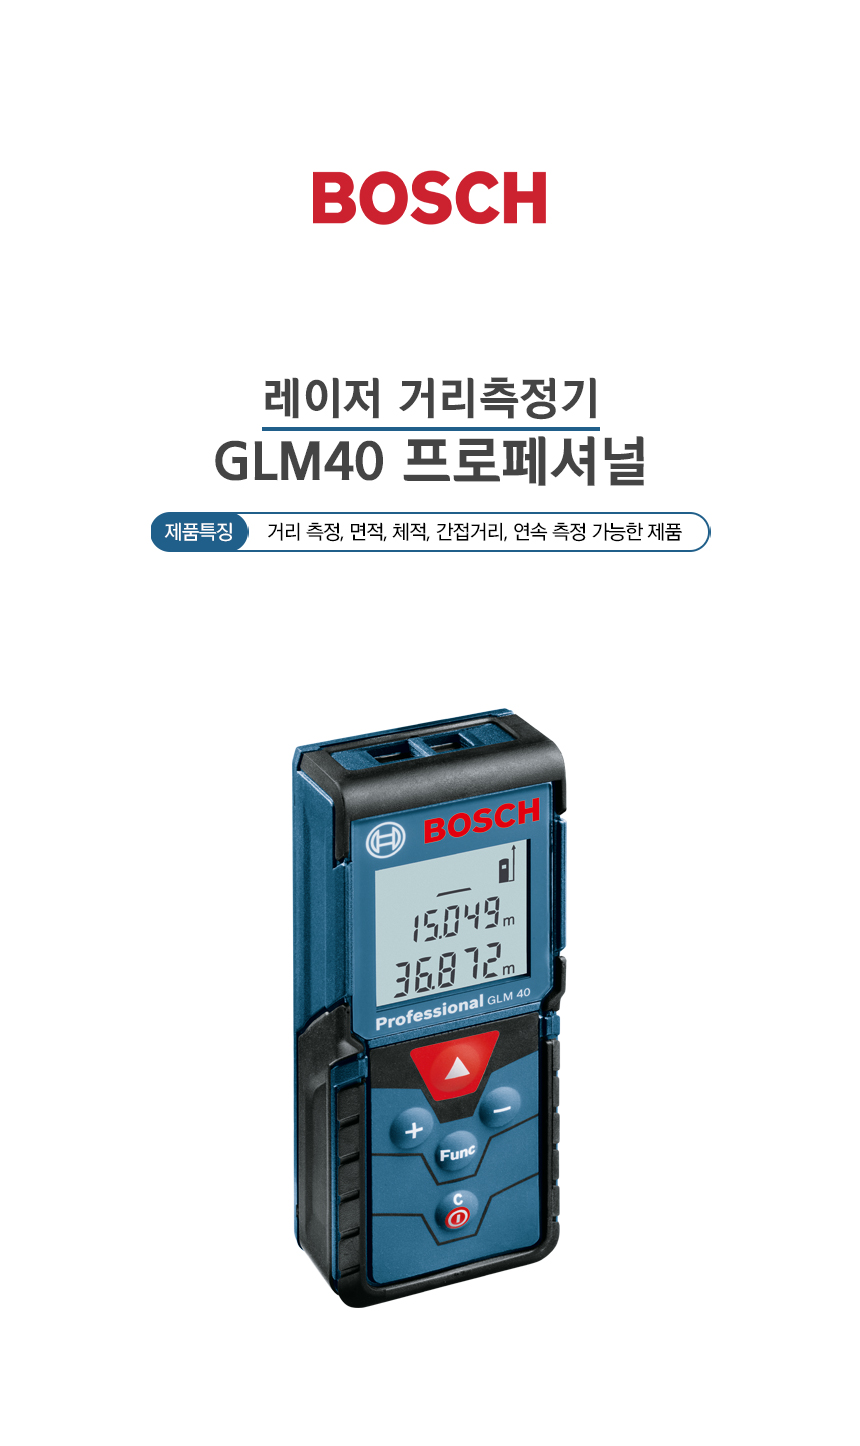 보쉬 레이저거리측정기 Glm40 프로페셔널 : 에이엠툴